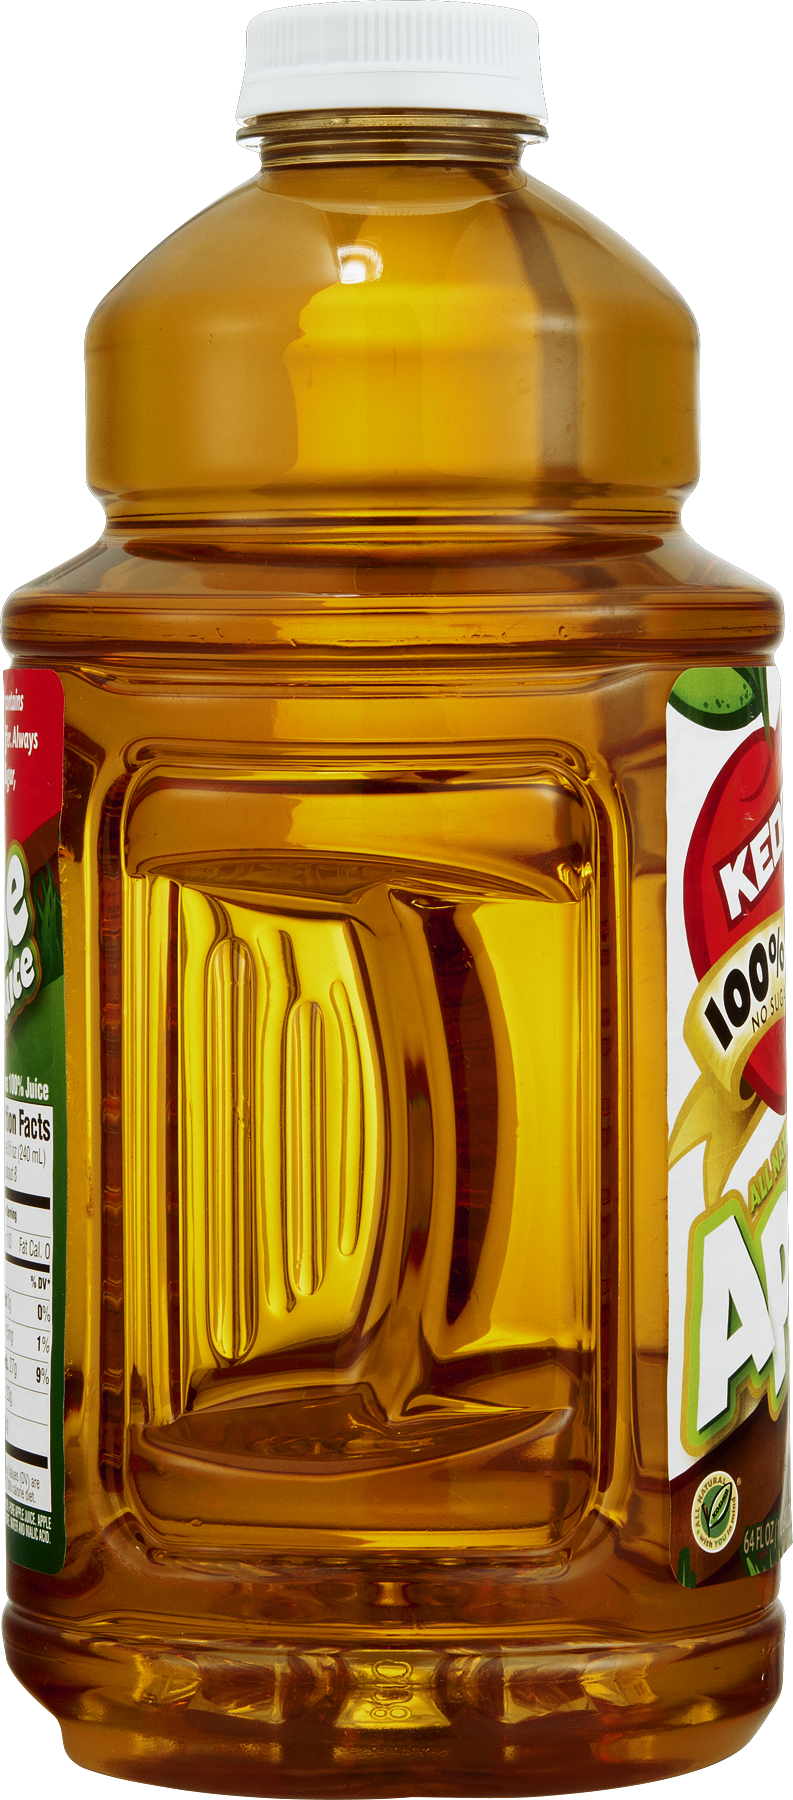 Kedem Food Products Kedem 100% Juice, 64 Oz - Kedem Apple Juice - 64 Fl Oz Bottle (793x1800), Png Download